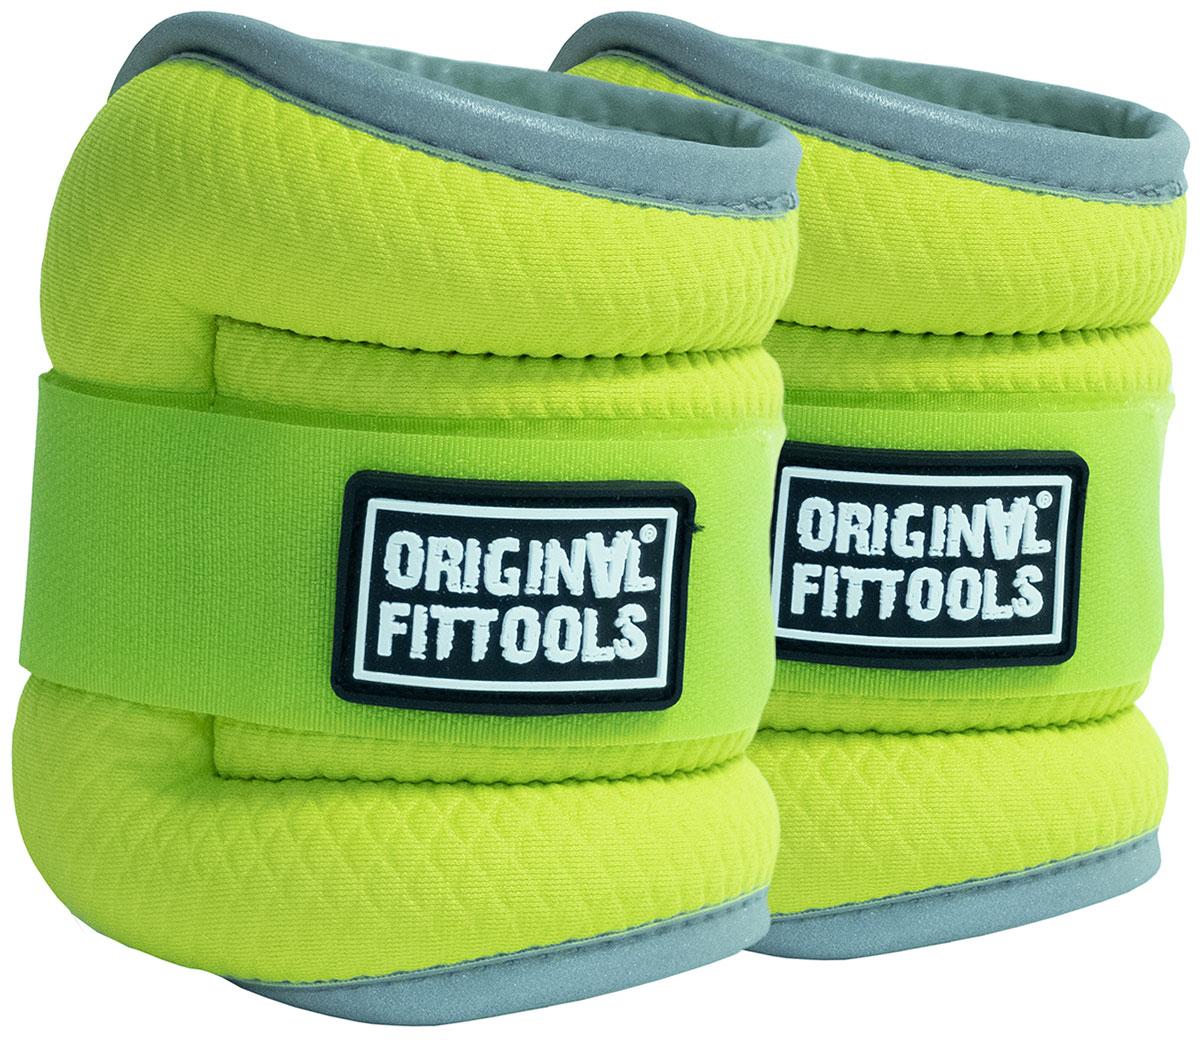 Комплект утяжелителей Original FitTools весом 1 кг пара, ярко-зеленые, FT-AW01-AG цена и фото